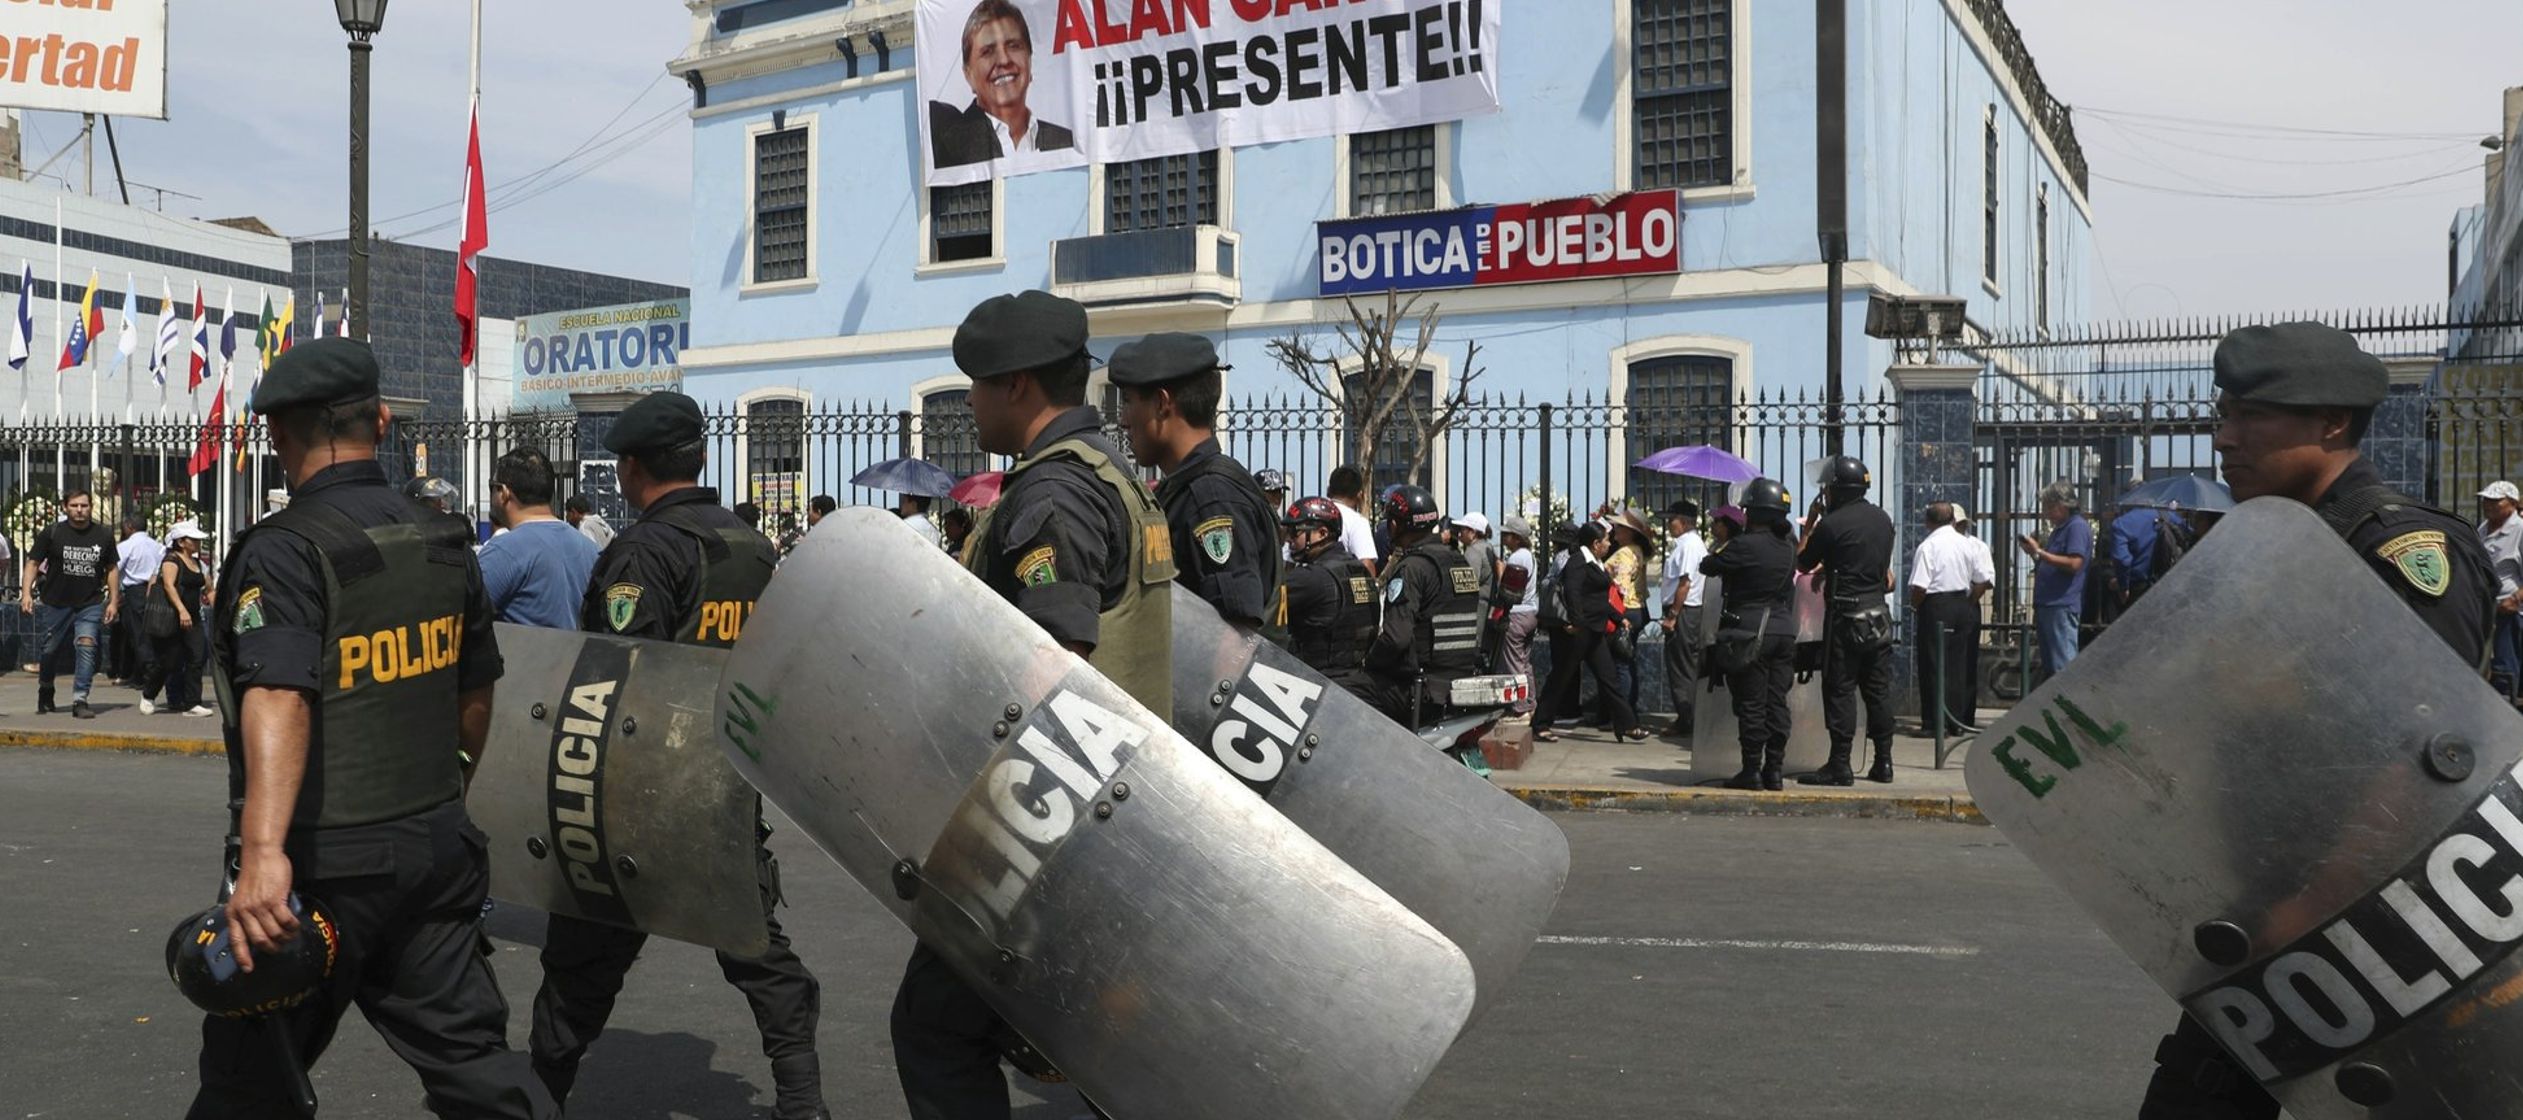 La masiva investigación anticorrupción ha sacudido especialmente a Perú, que...